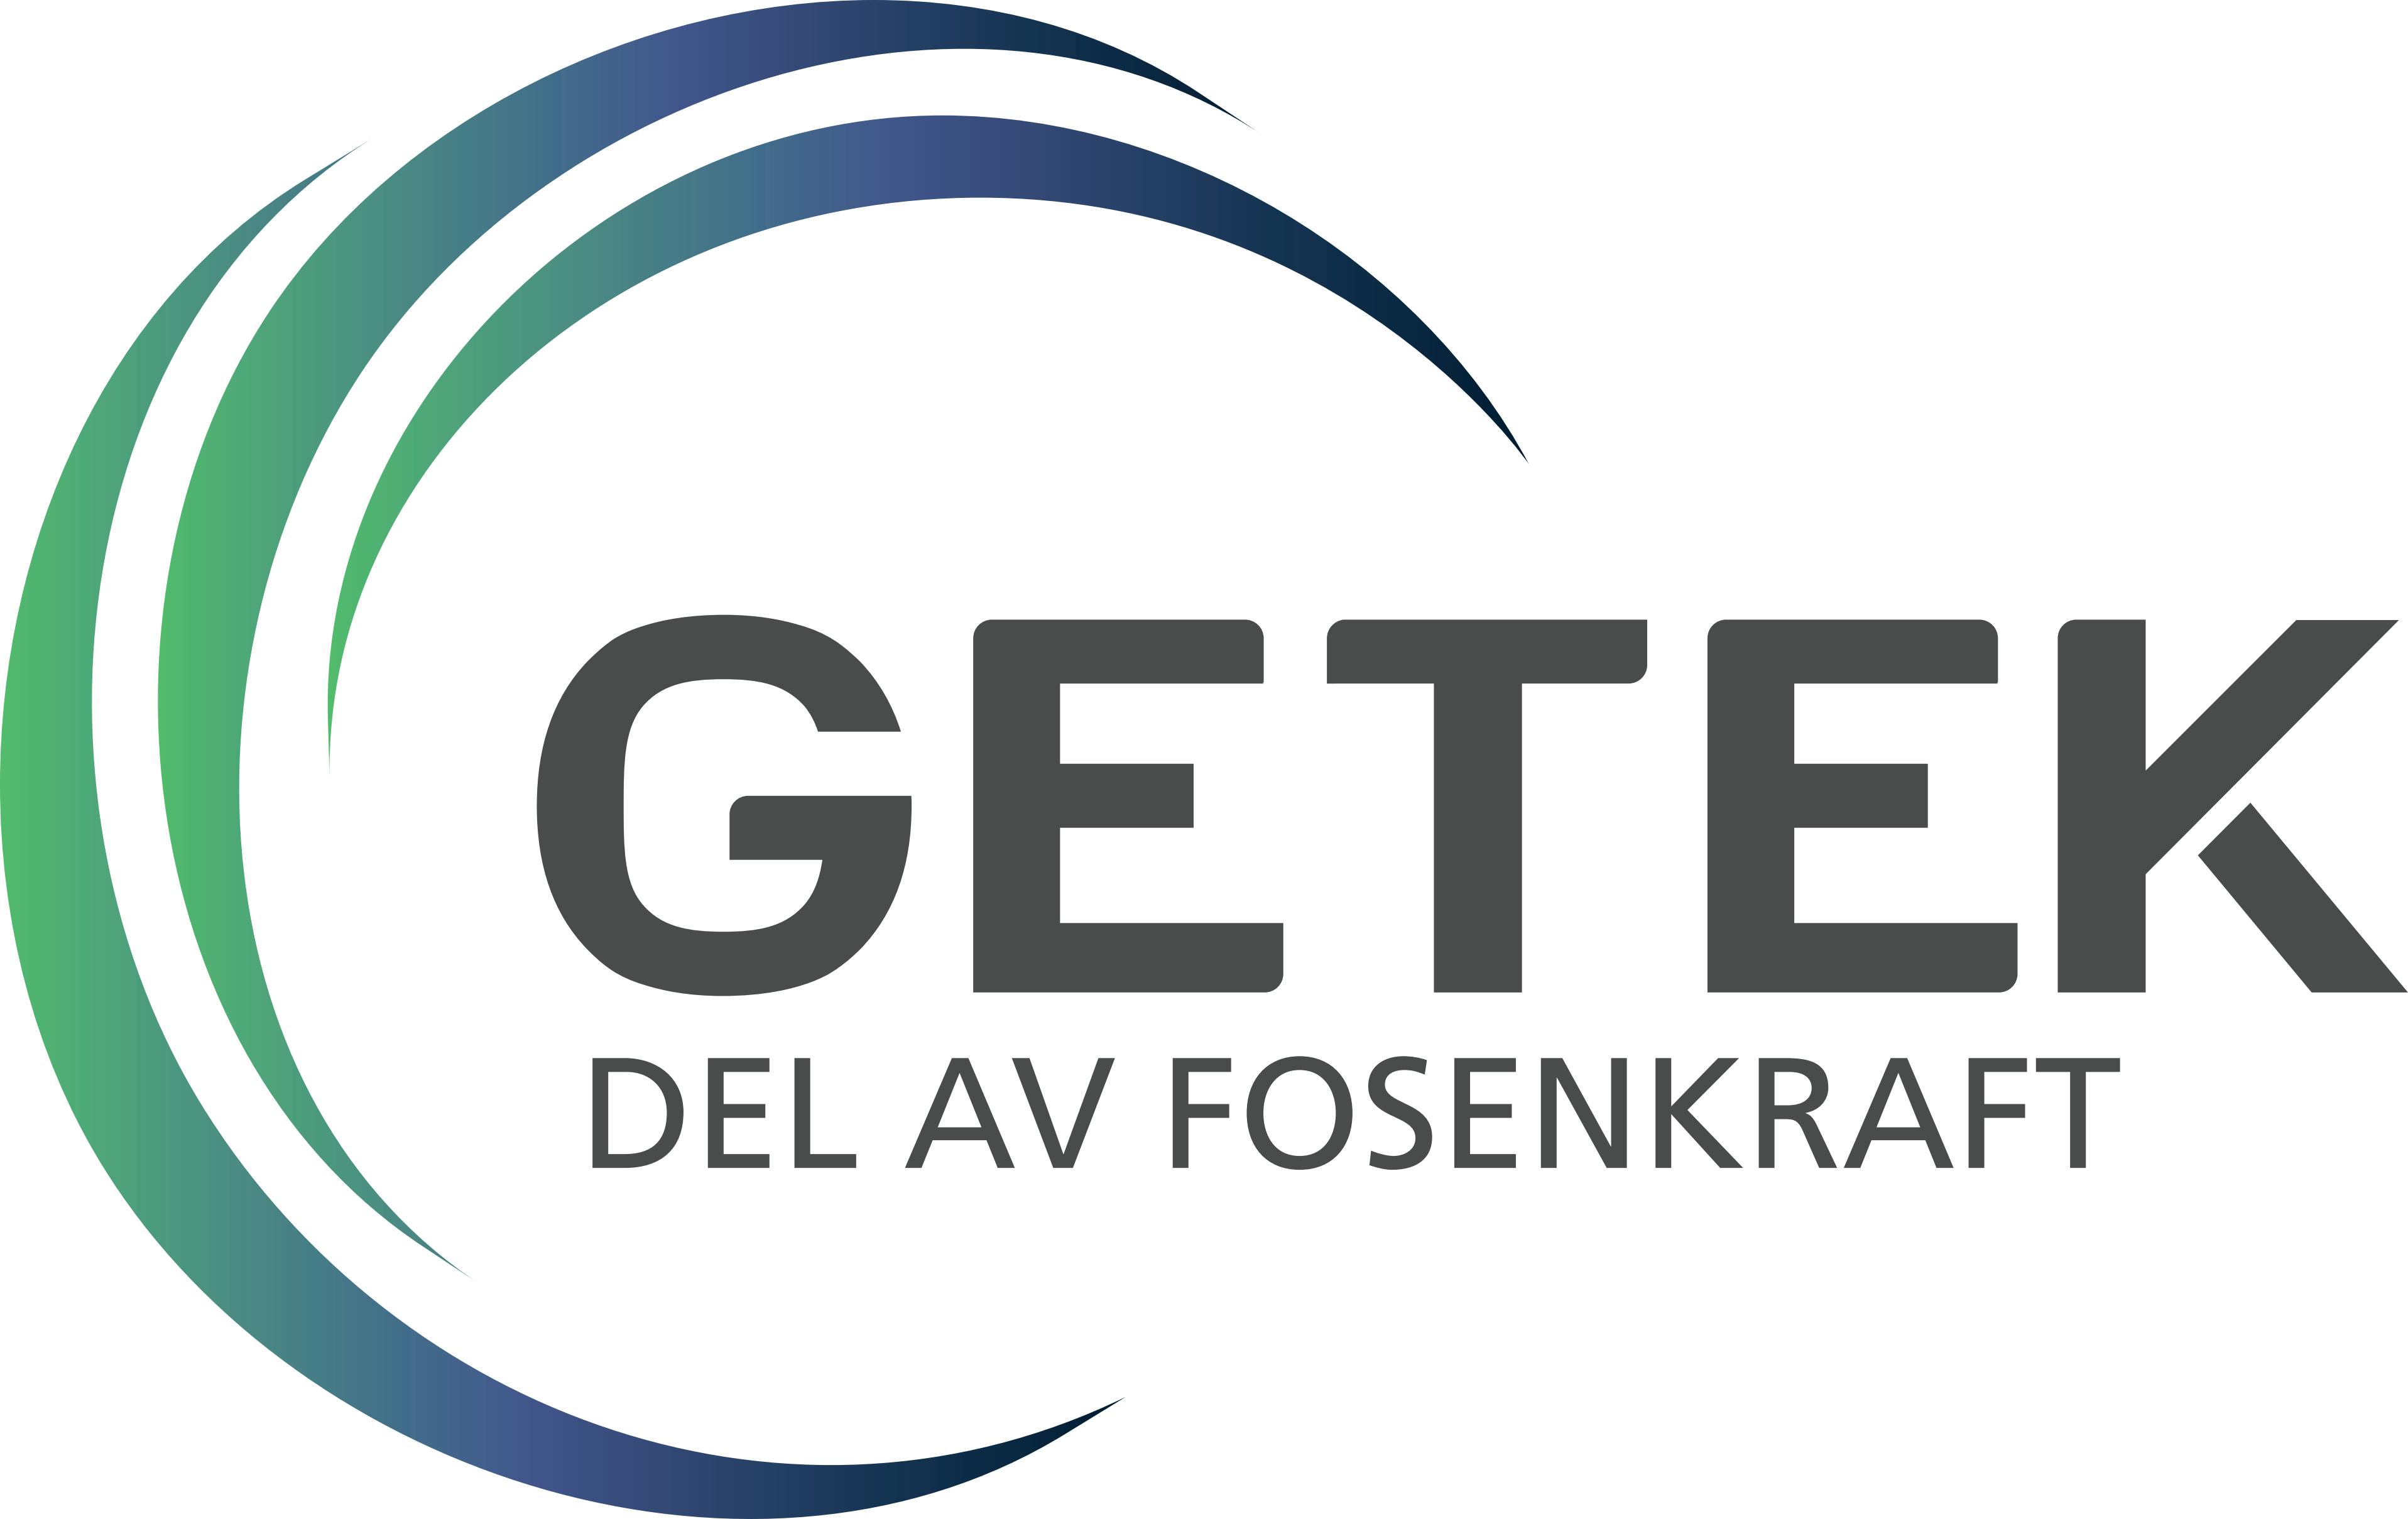 Logoen til Getek Solkalkulator